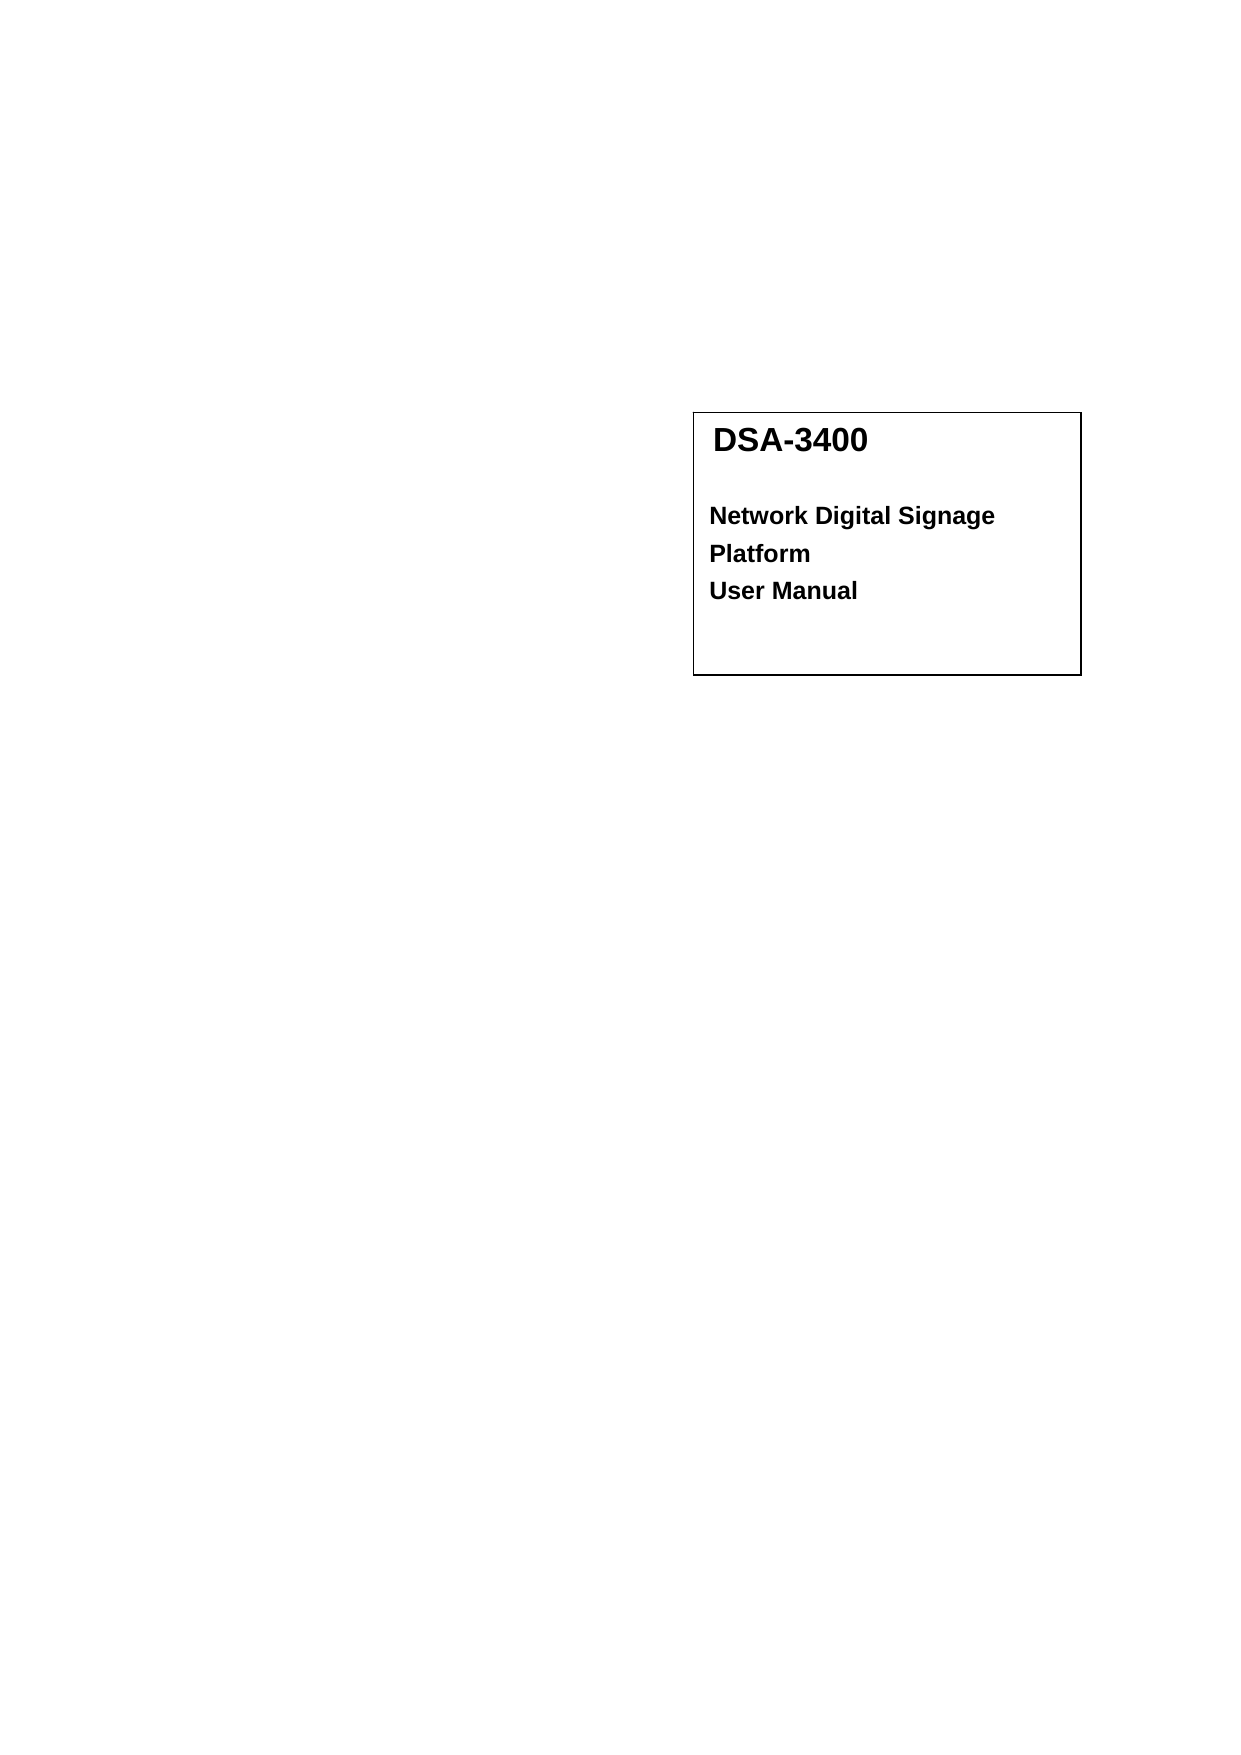 DSA-3400  Network Digital Signage Platform User Manual  